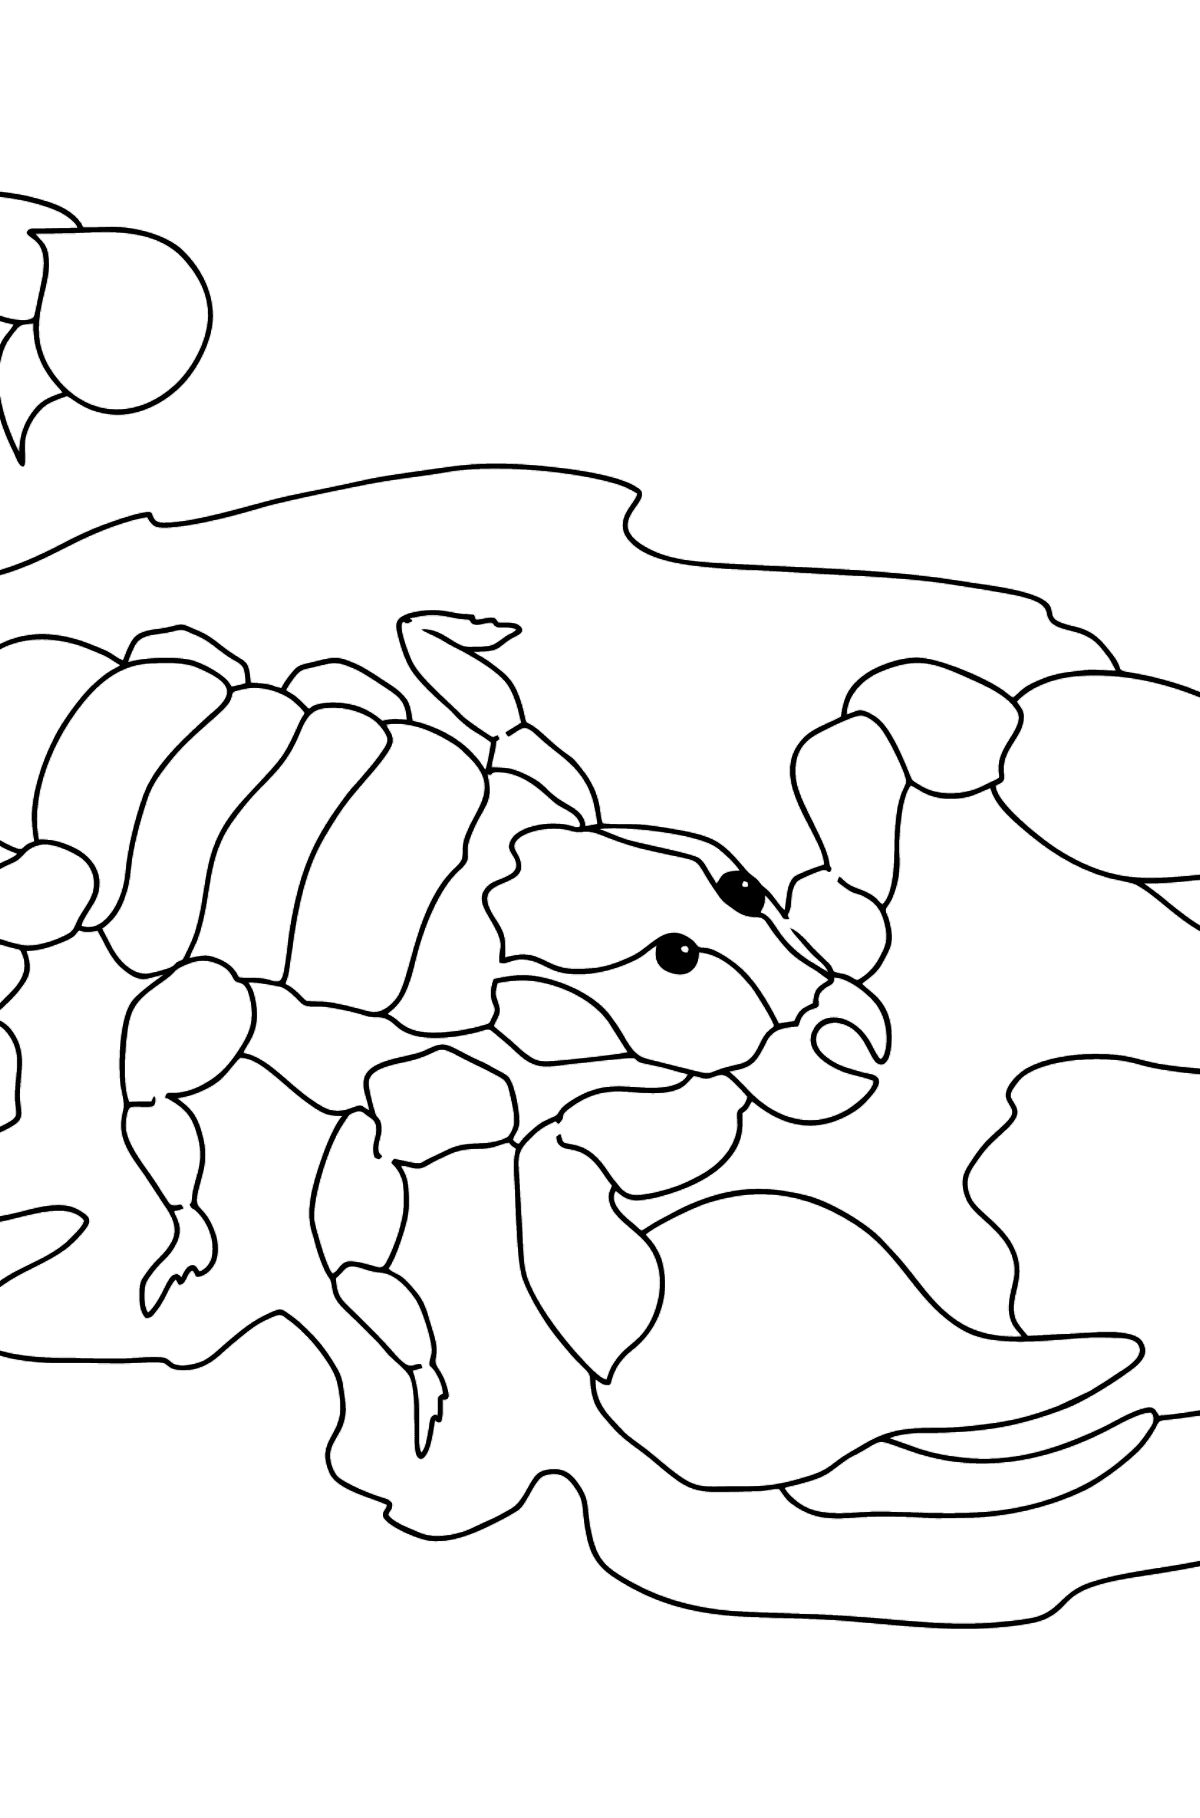 Tegning til fargelegging svart skorpion (vanskelig) - Tegninger til fargelegging for barn